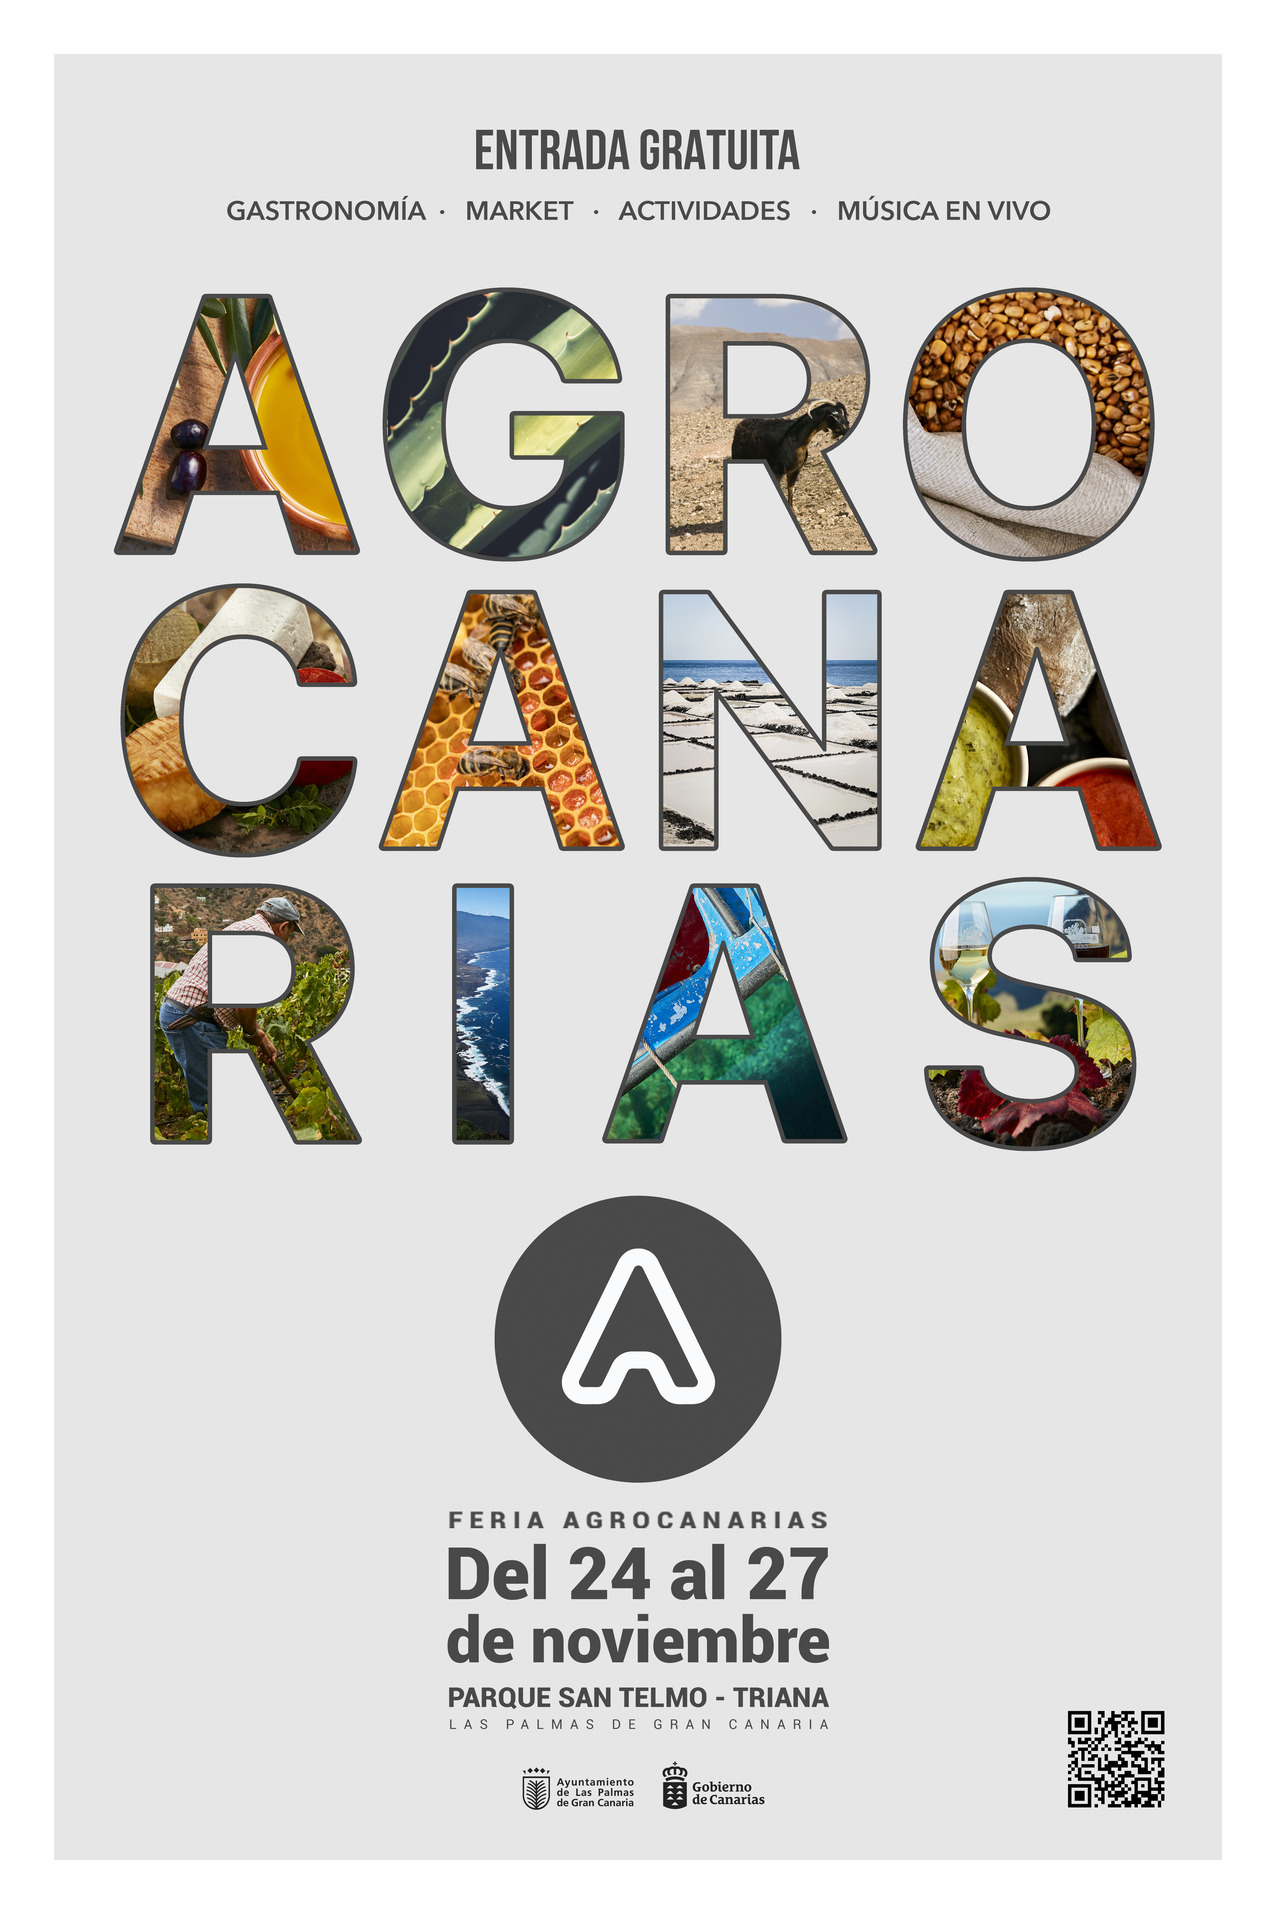 Abierto plazo de inscripción de empresas productoras para la Feria Agrocanarias en Gran Canaria